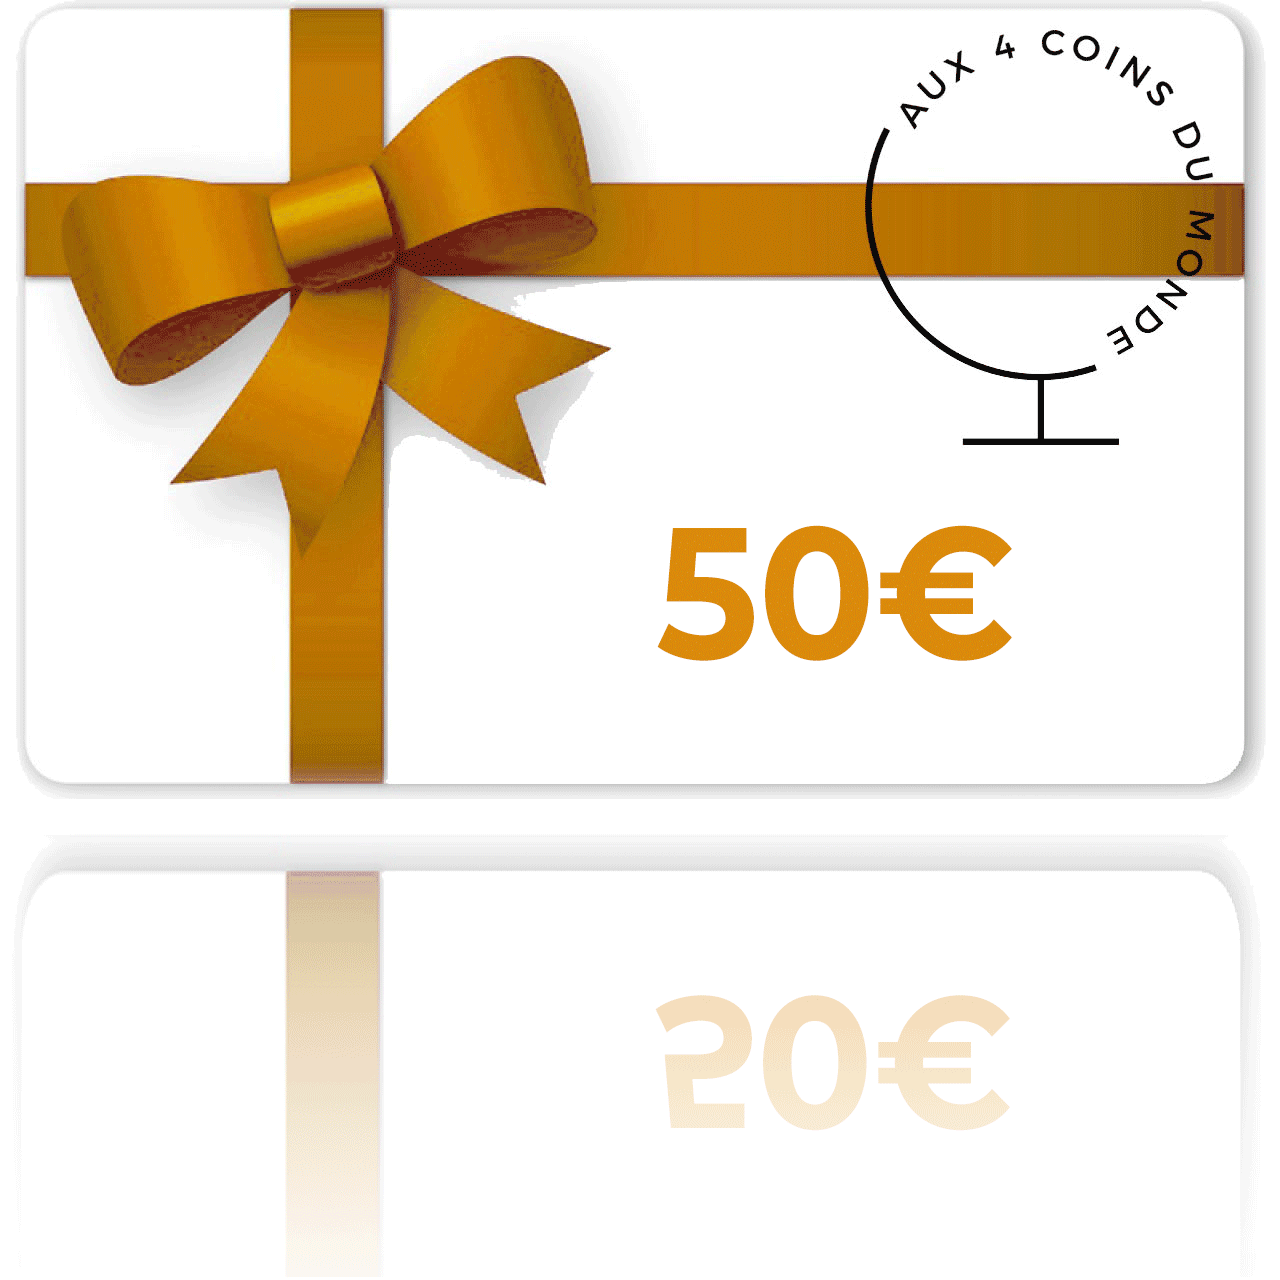 Gagnez une carte cadeau  de 50€ ! 